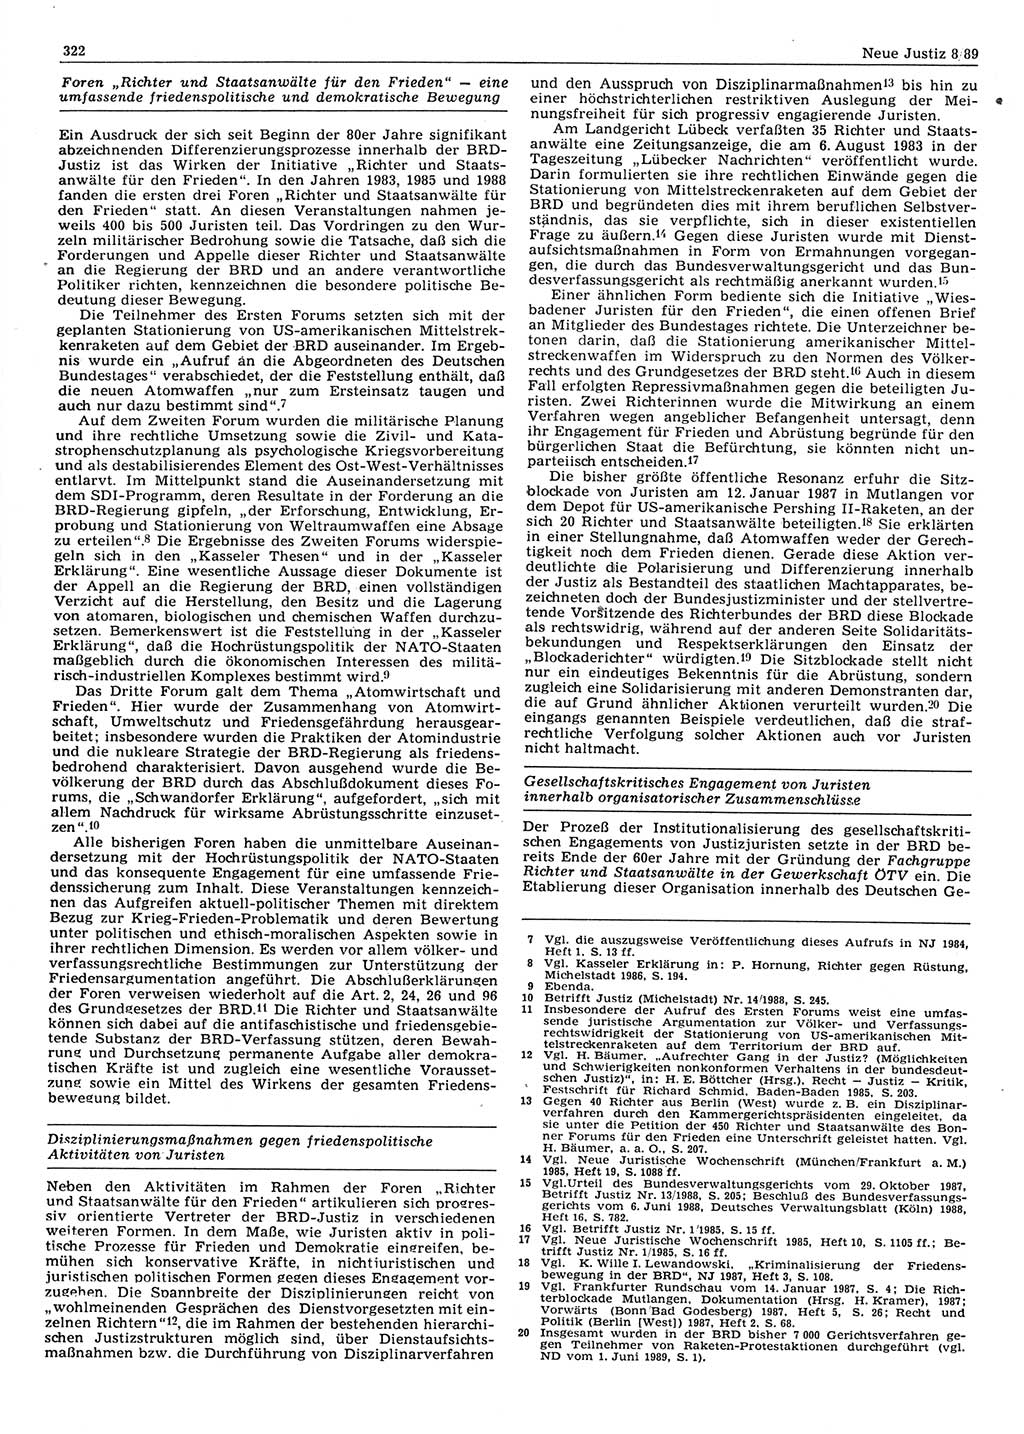 Neue Justiz (NJ), Zeitschrift für sozialistisches Recht und Gesetzlichkeit [Deutsche Demokratische Republik (DDR)], 43. Jahrgang 1989, Seite 322 (NJ DDR 1989, S. 322)